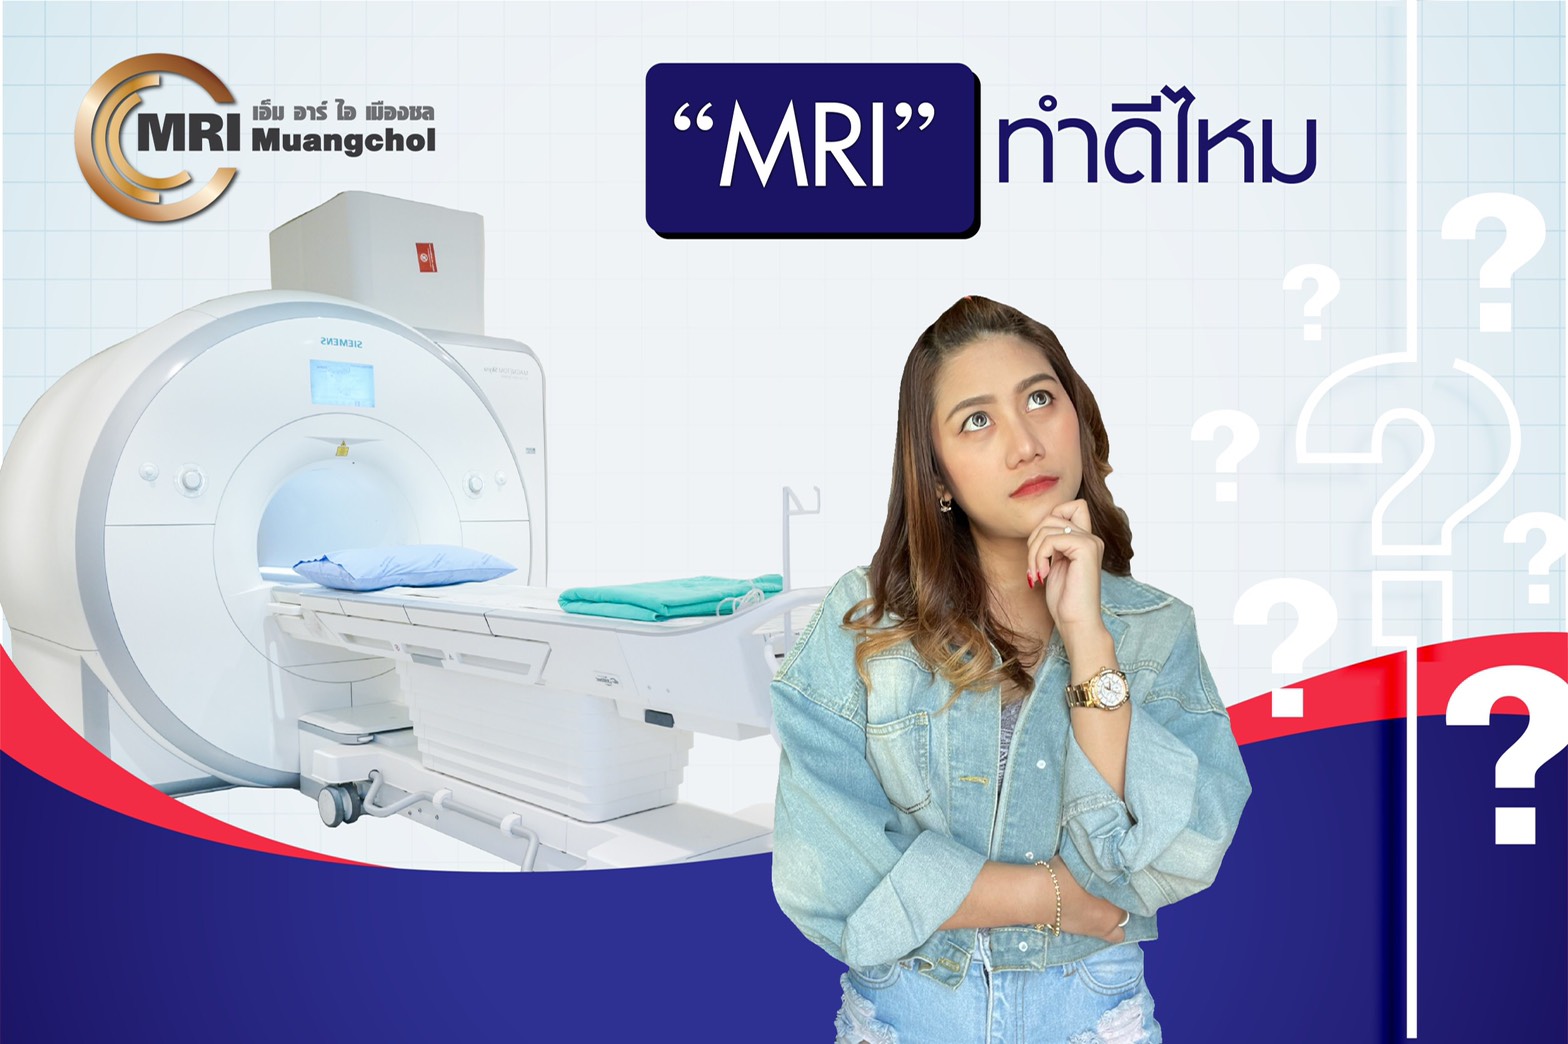 MRI ทำดีไหม มีข้อดี-ข้อเสียอะไรบ้ำง ? - ความรู้สุขภาพ - โรงพยาบาลจุฬารัตน์ชลเวช